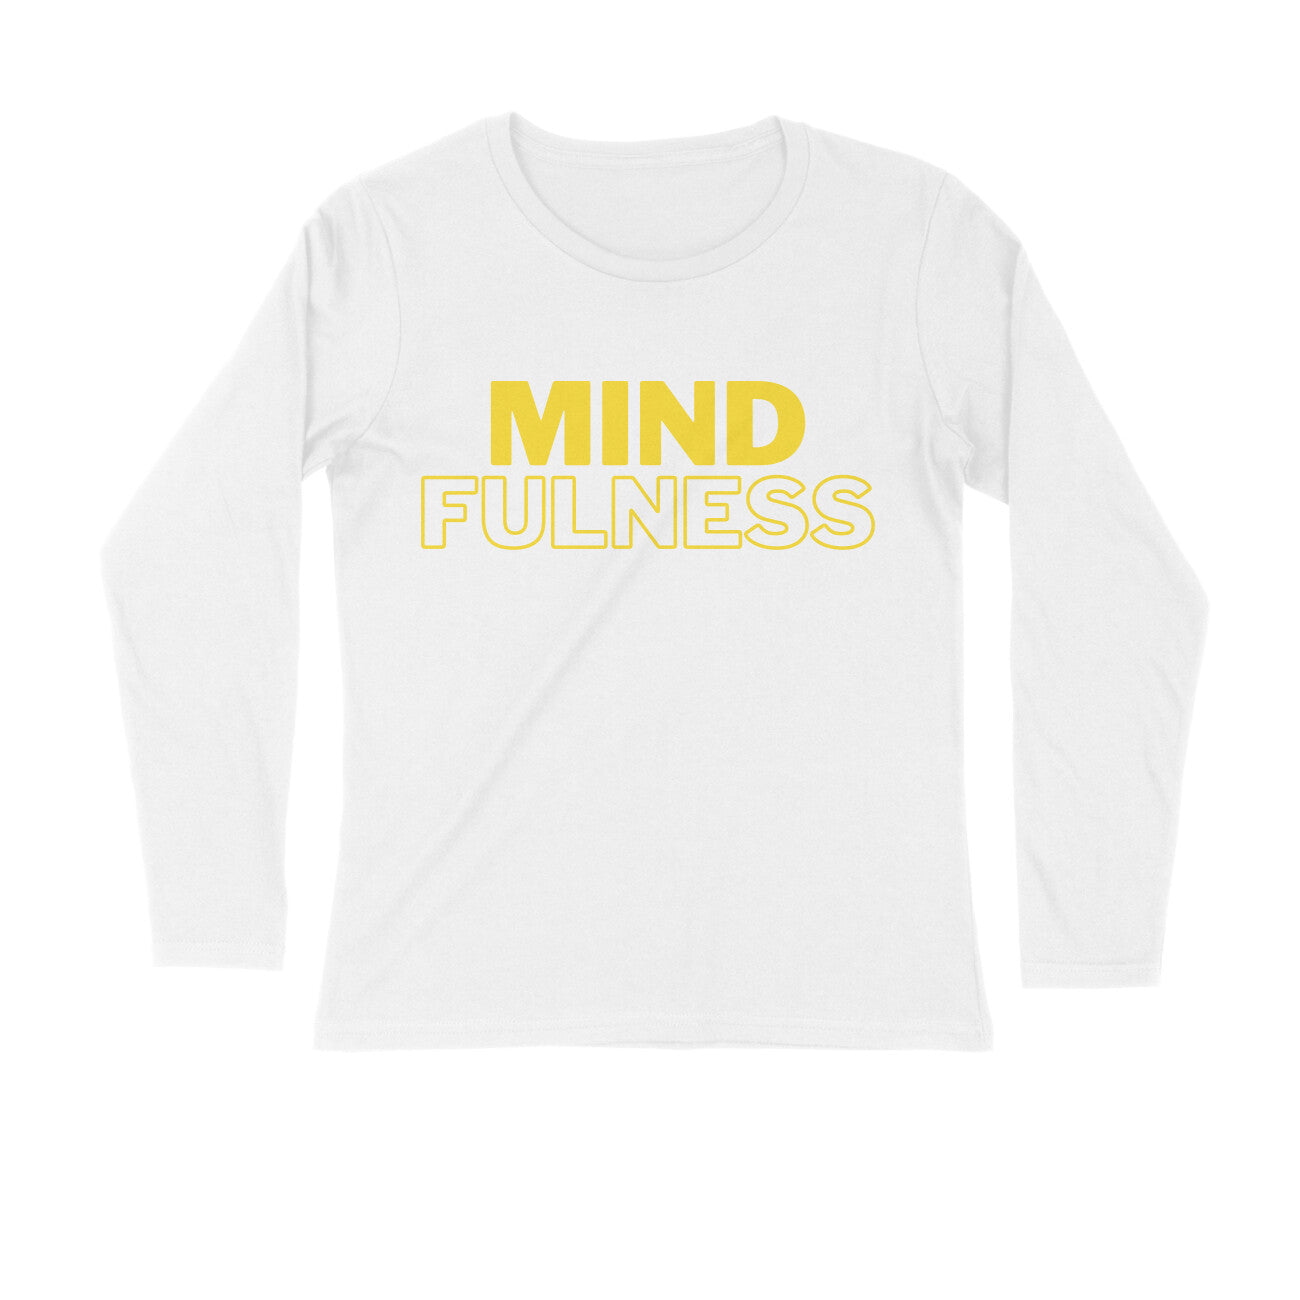 Mindfulness - Long Sleeve Unisex Tshirt